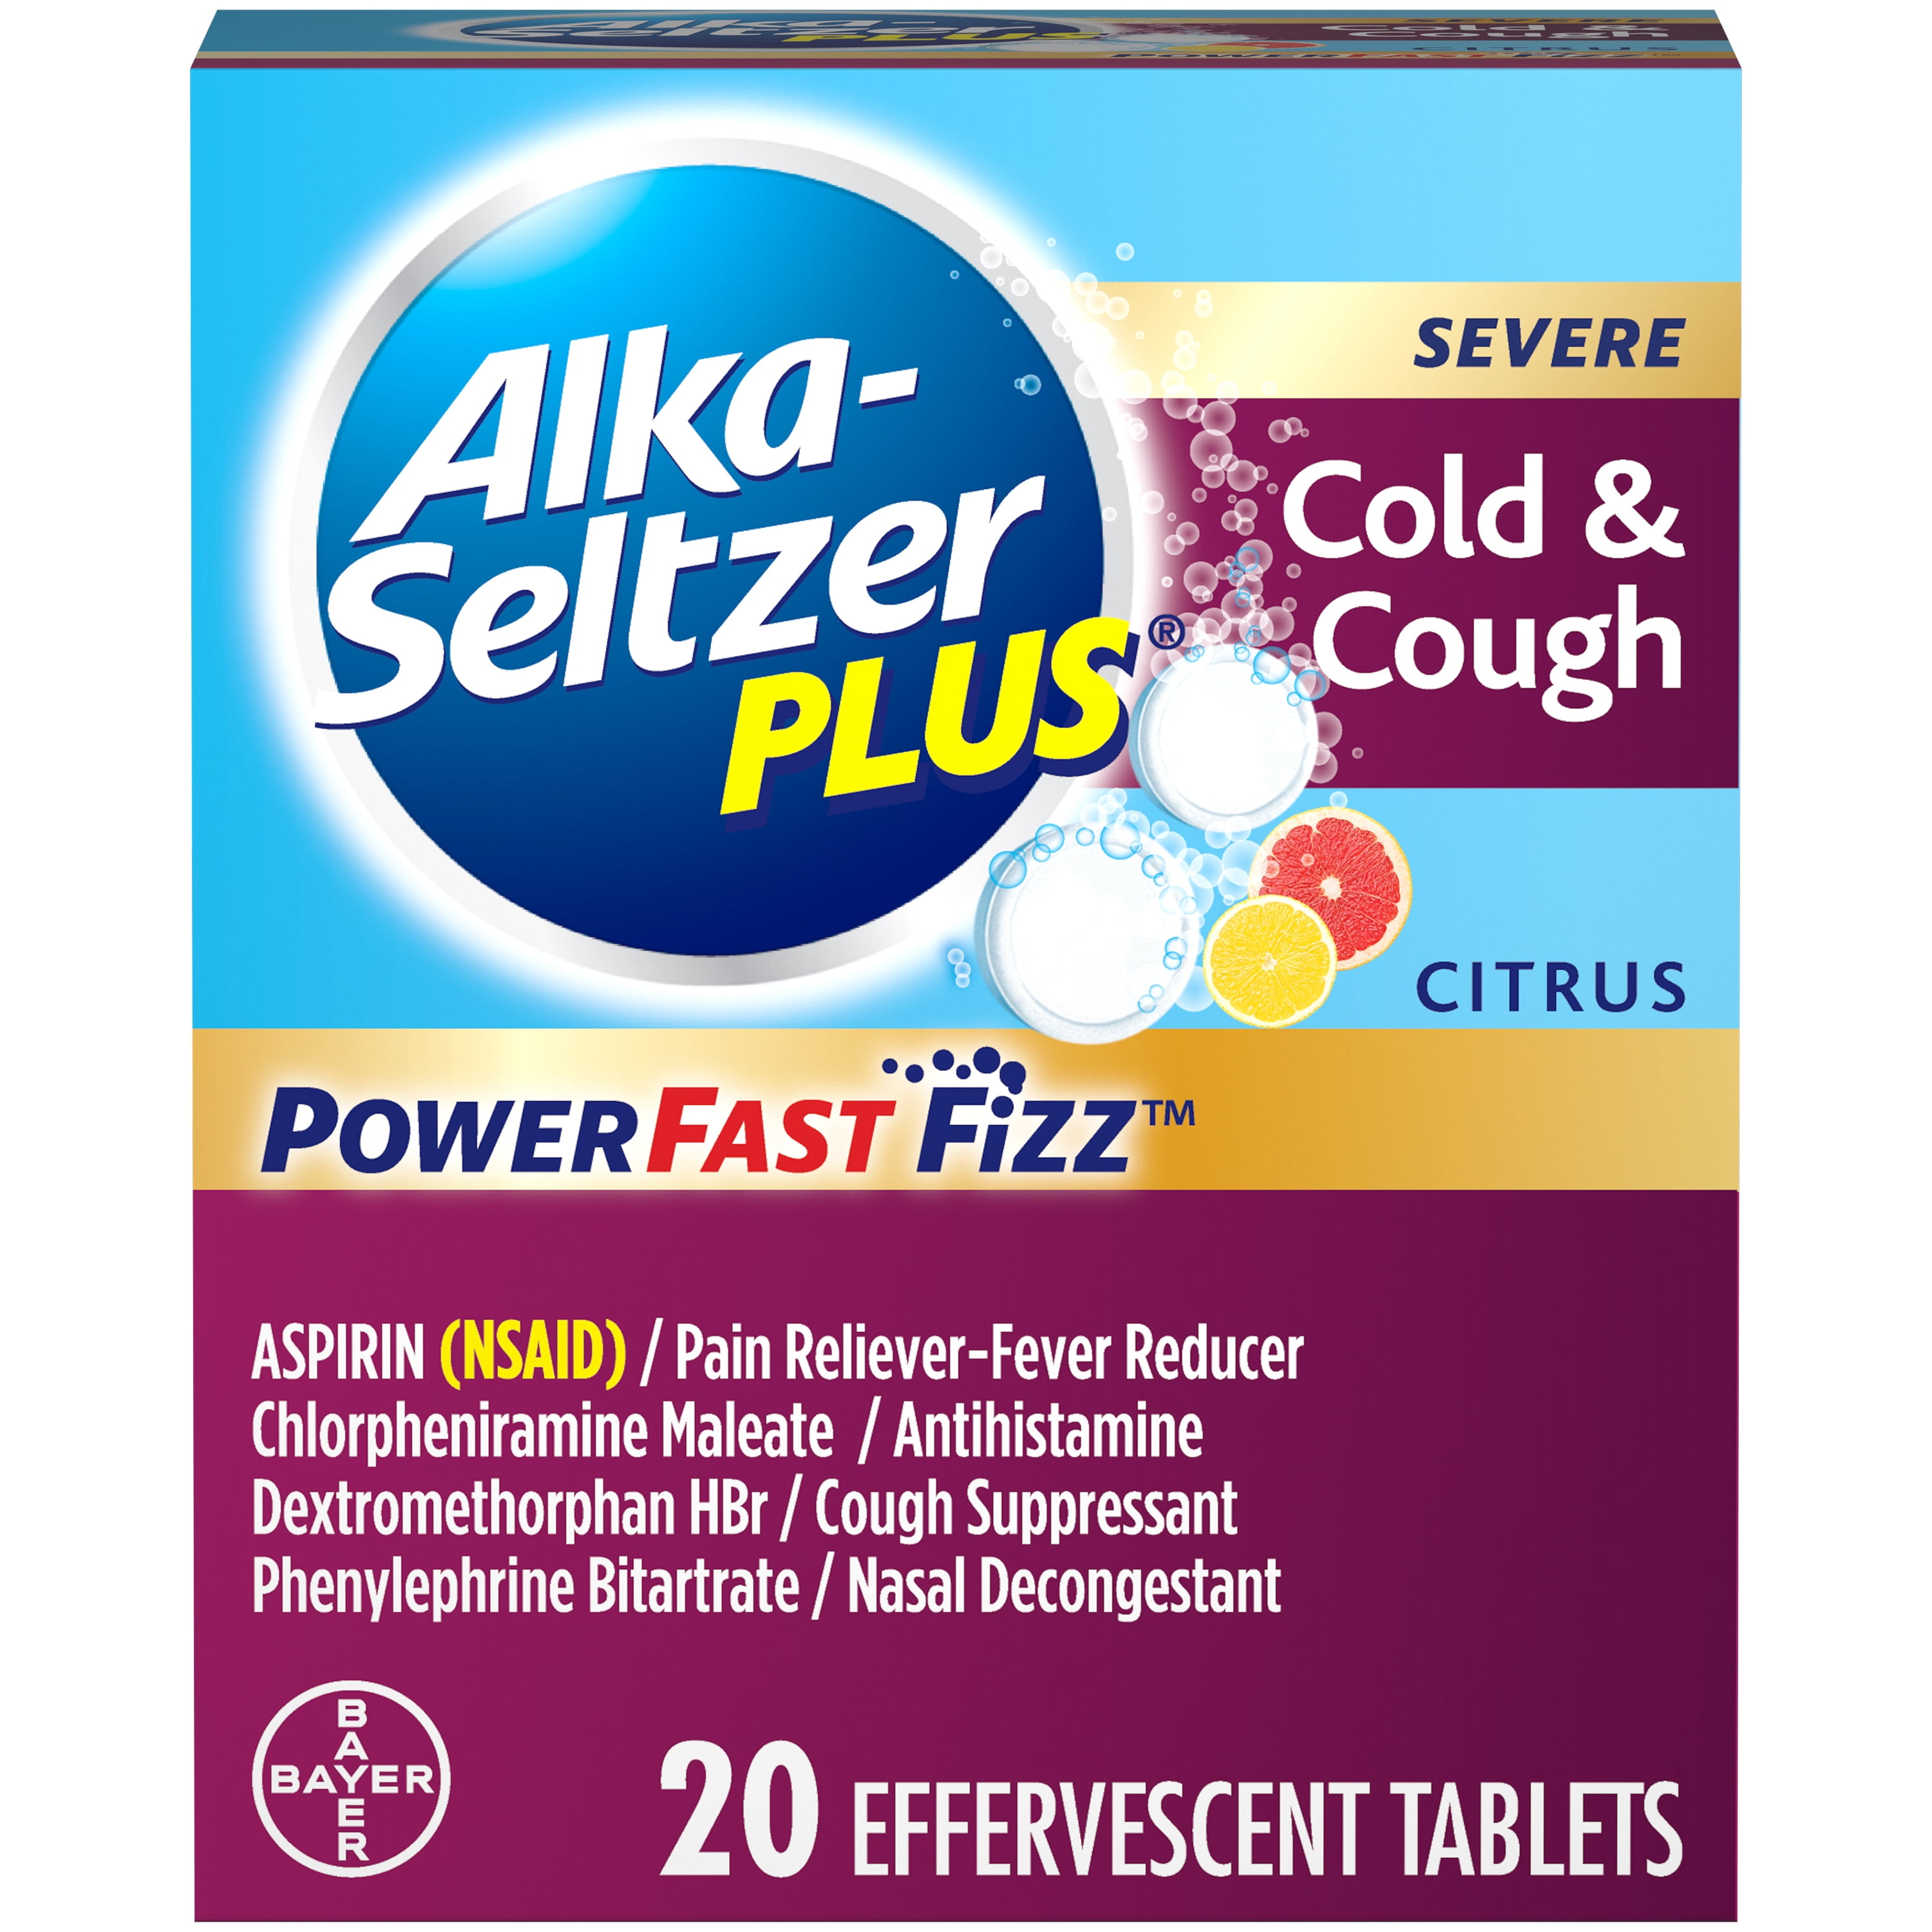 Alka-Seltzer Plus Severe Cold & Cough Medicine PowerFast Fizz Citrus Effervescent Tablets, 20 Count